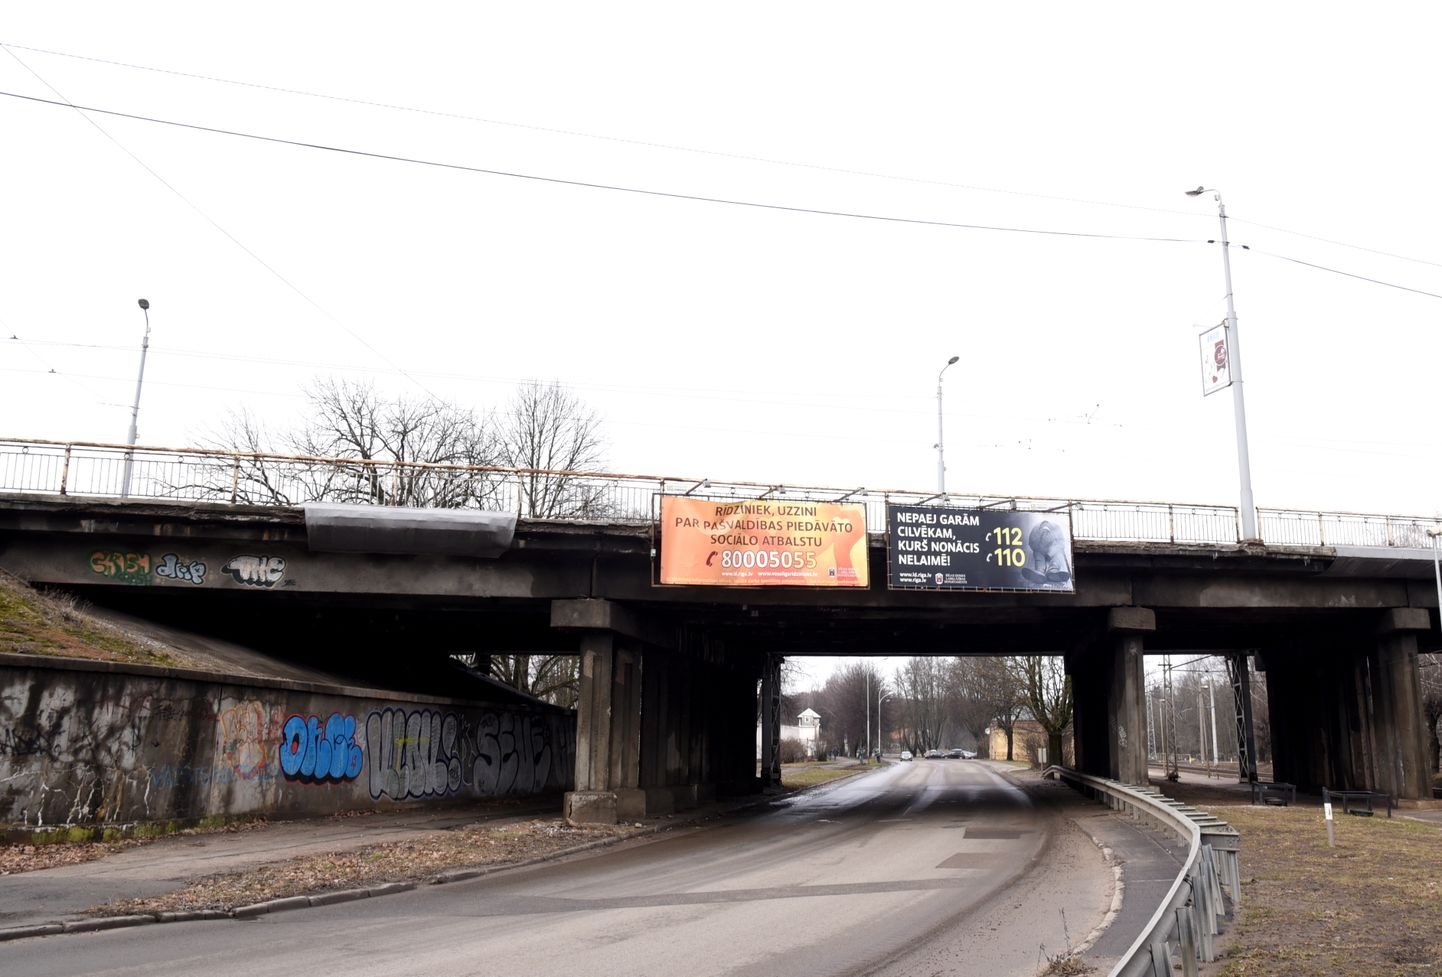 Brasas tilts jeb satiksmes pārvads Rīgā pār dzelzceļa līniju Zemitāni—Skulte, kas savieno Rīgas centru (Miera iela) ar Mežaparku un Čiekurkalnu (Gaujas iela).